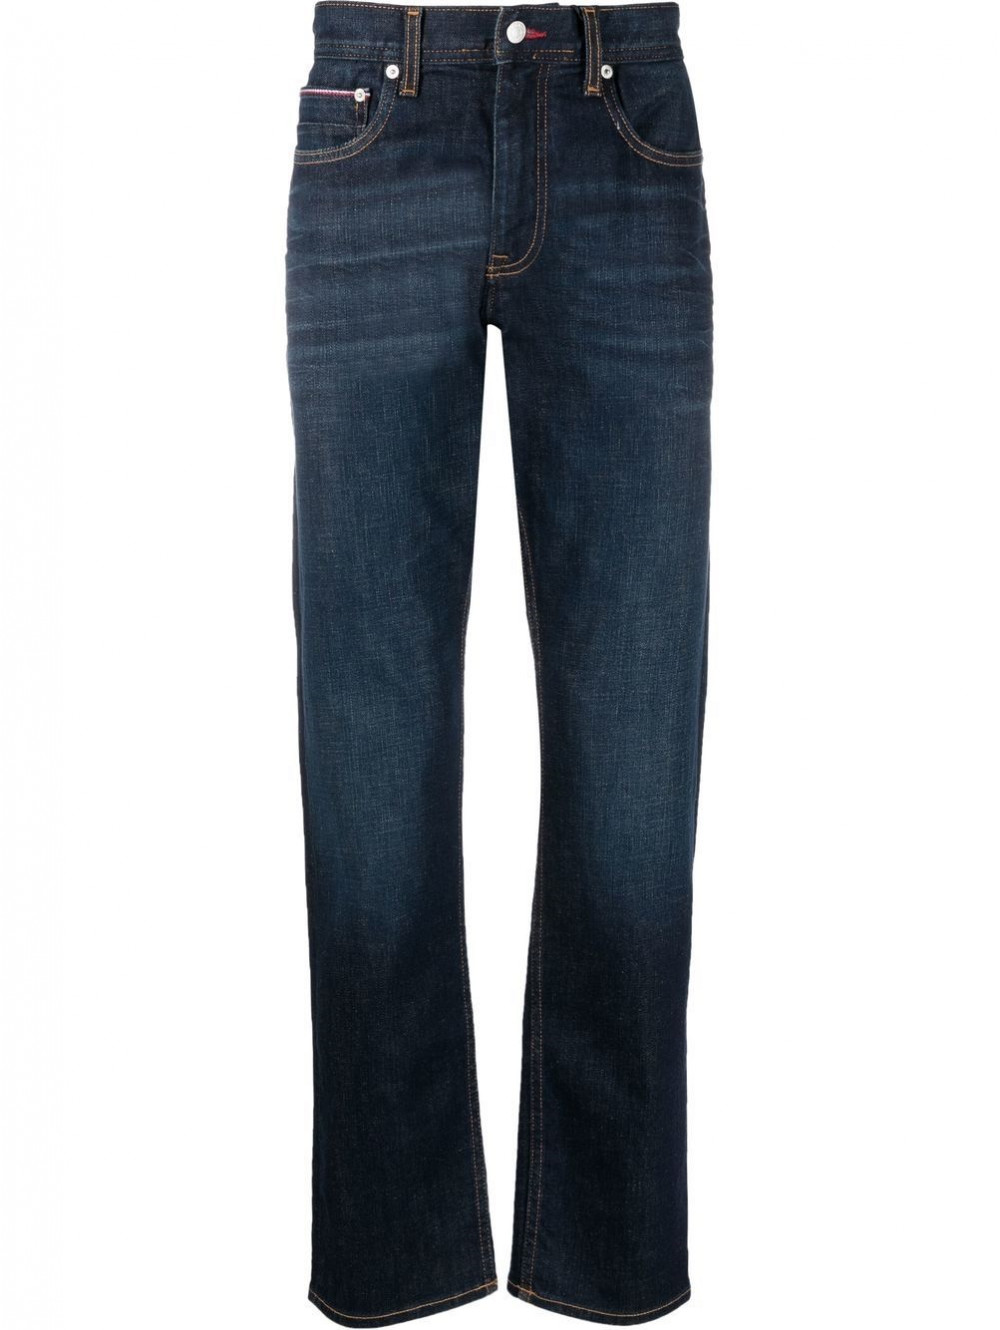 Regular mercer jeans